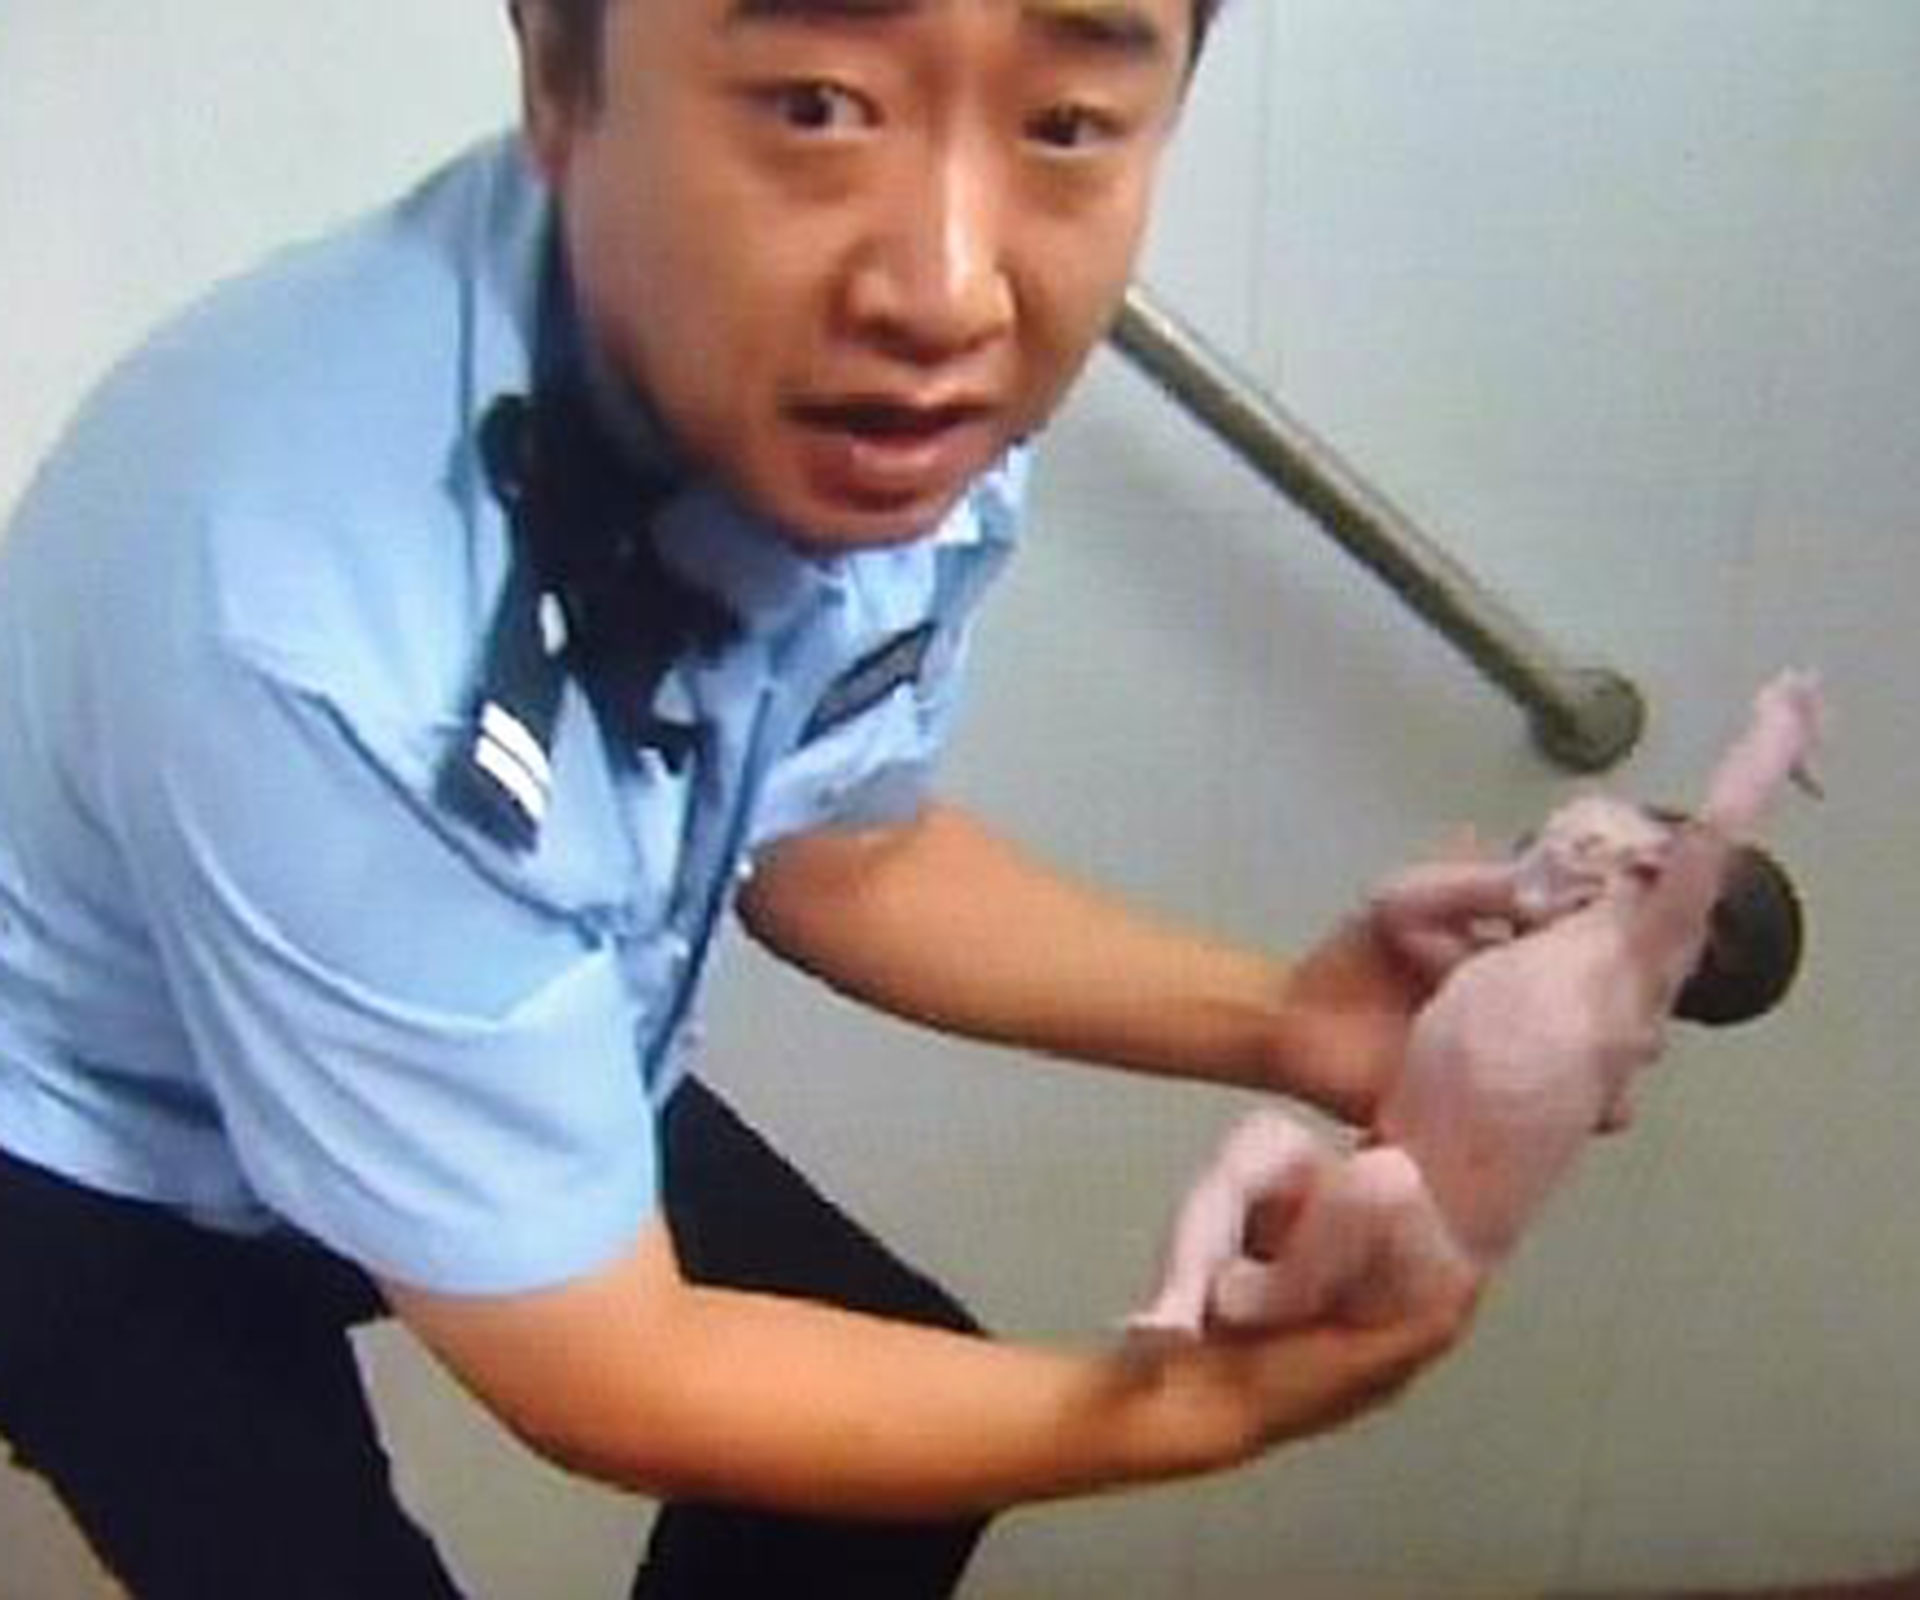 Newborn baby found stuck in public toilet